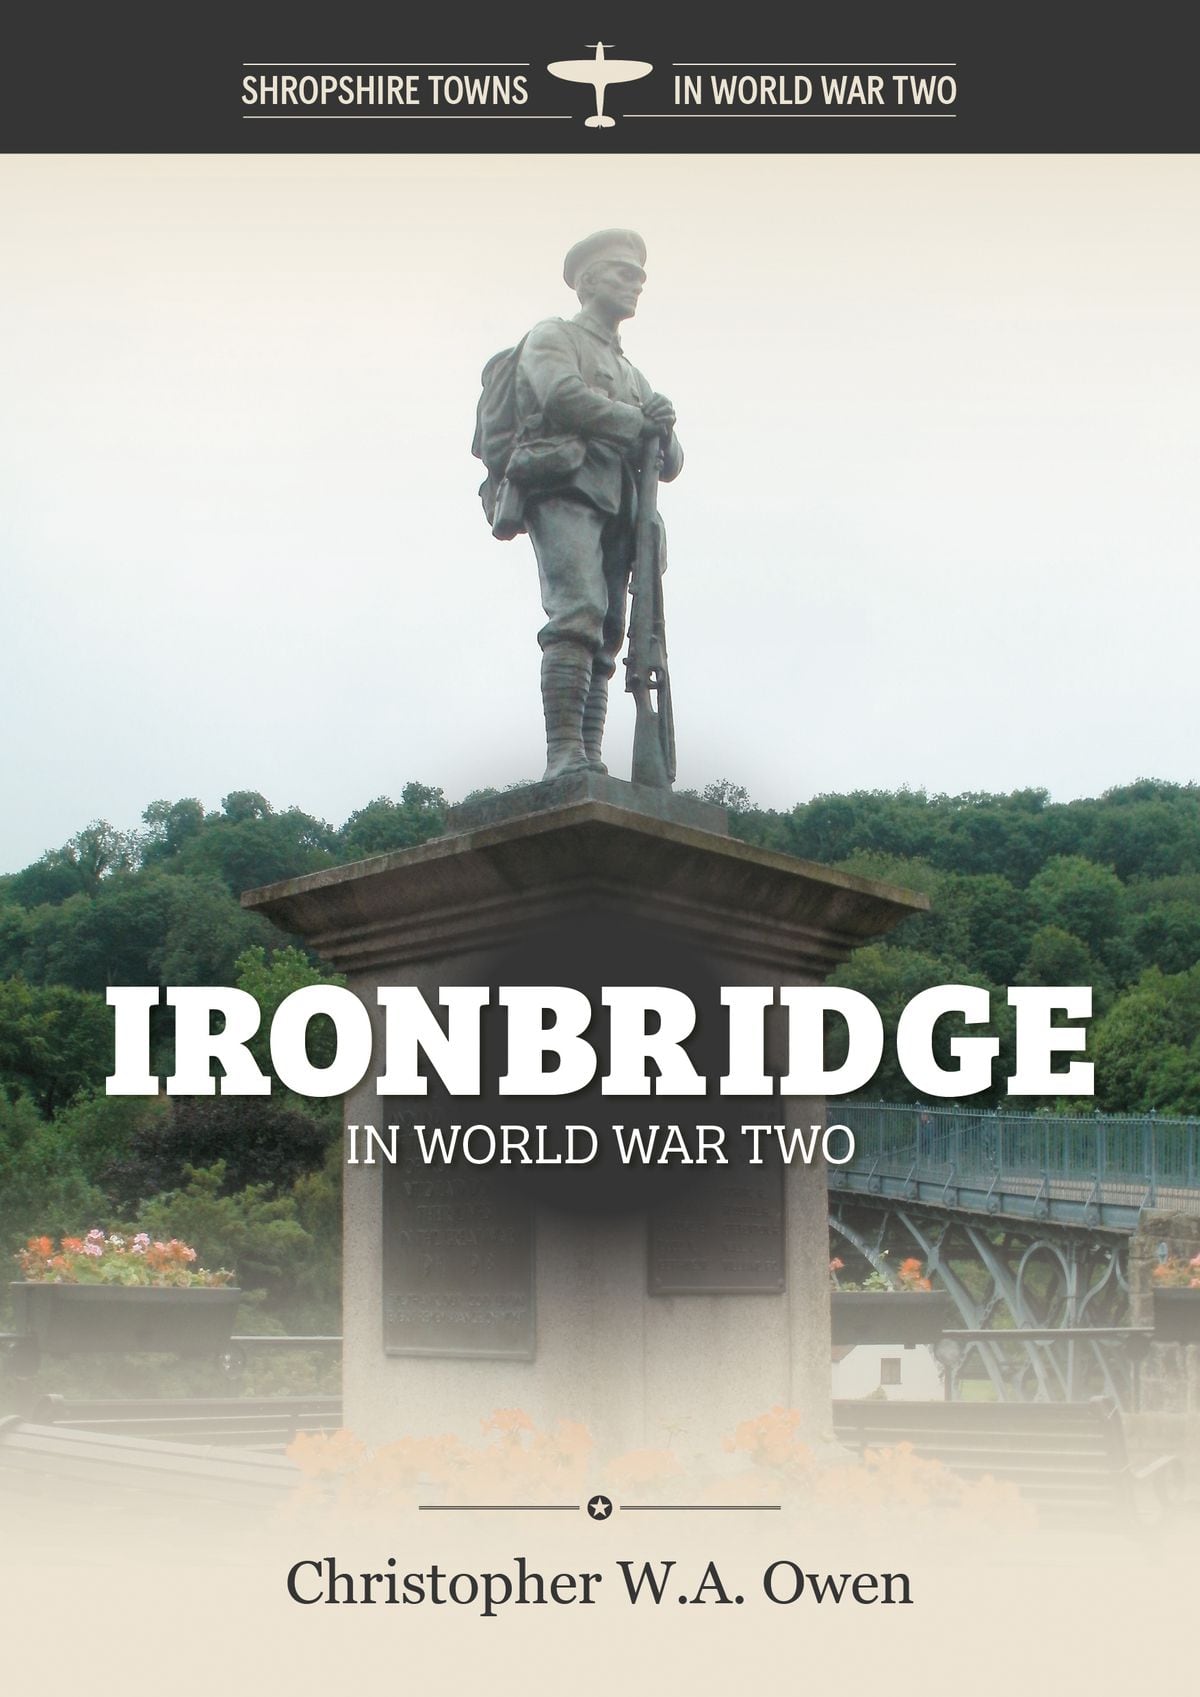 Ironbridge in World War Two by Chris Owen